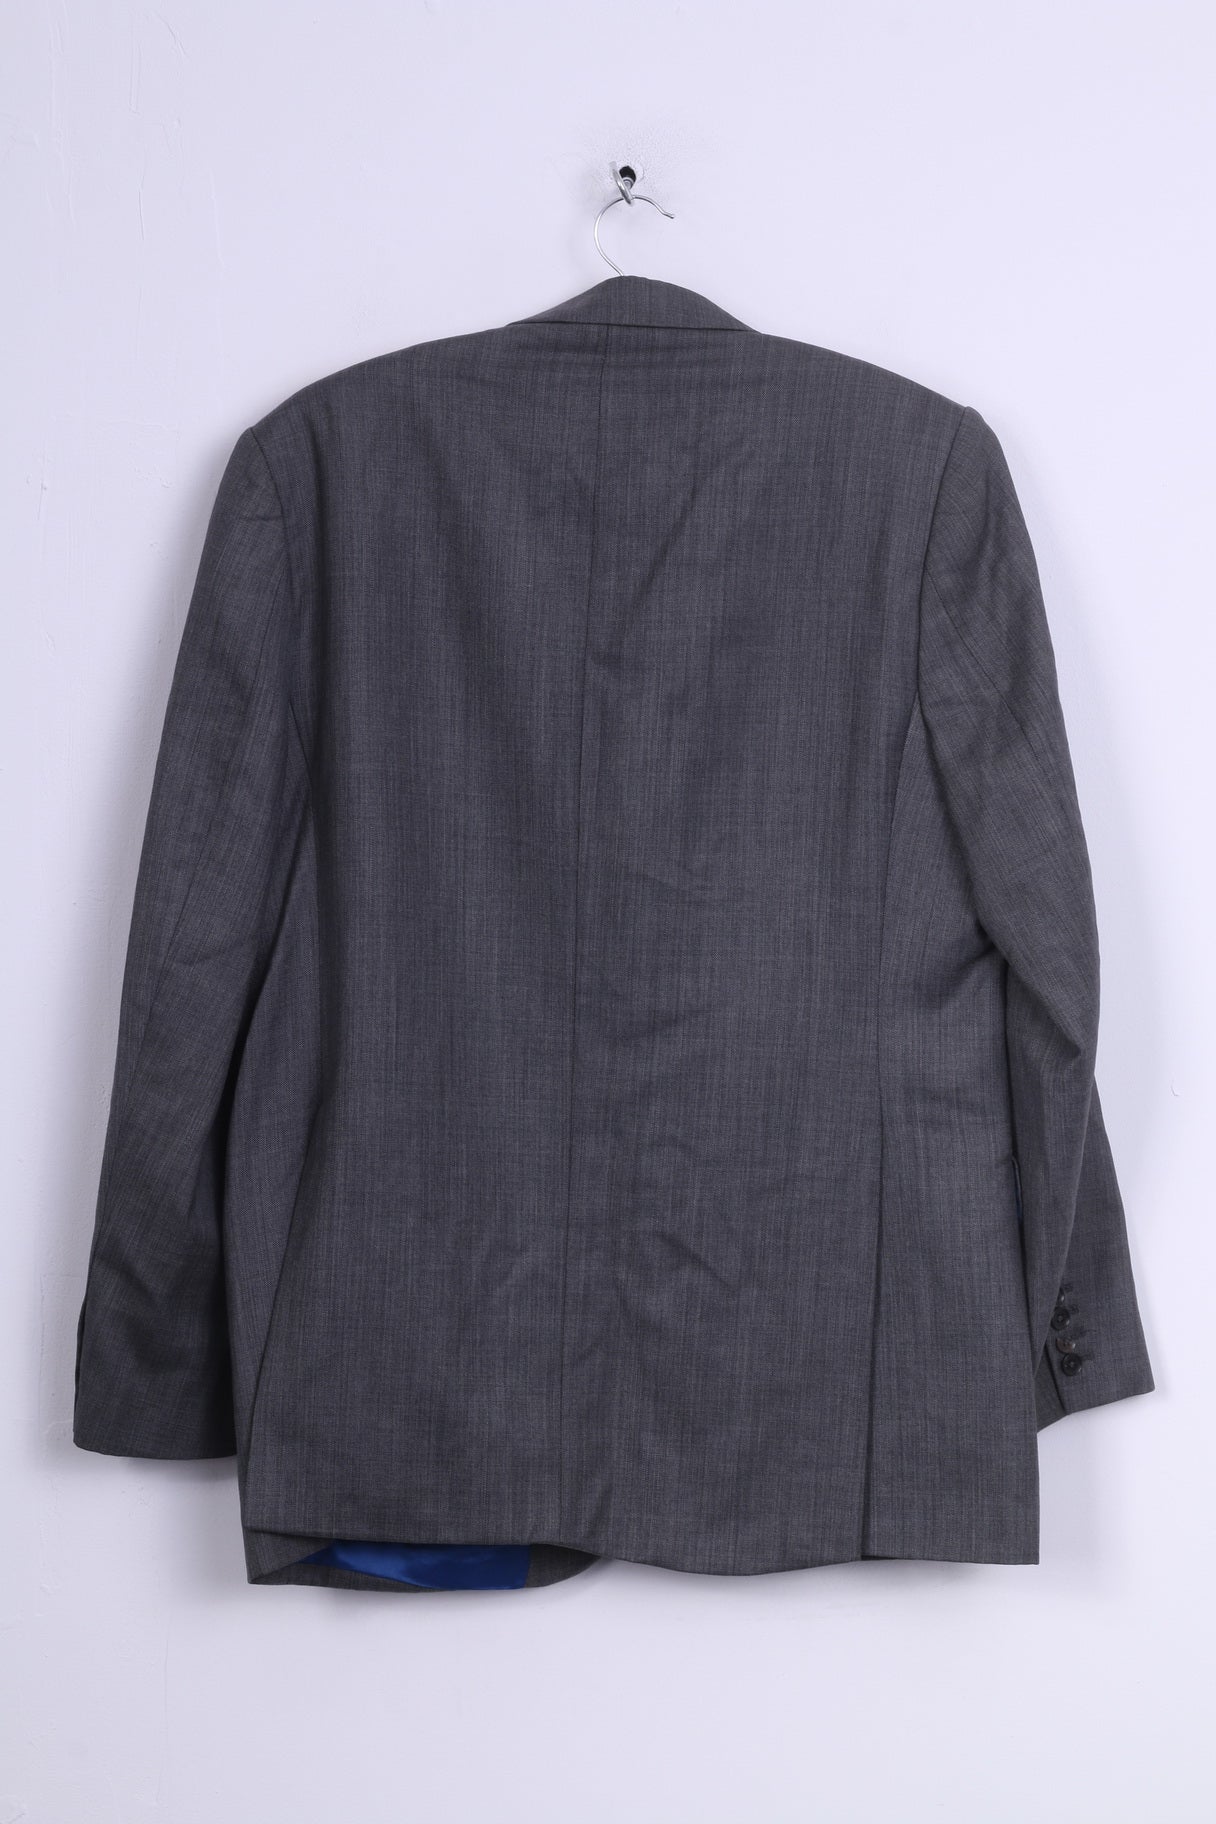 Charles Tyrwhitt Jermyn Street London Giacca blazer da uomo 44 L in lana grigia